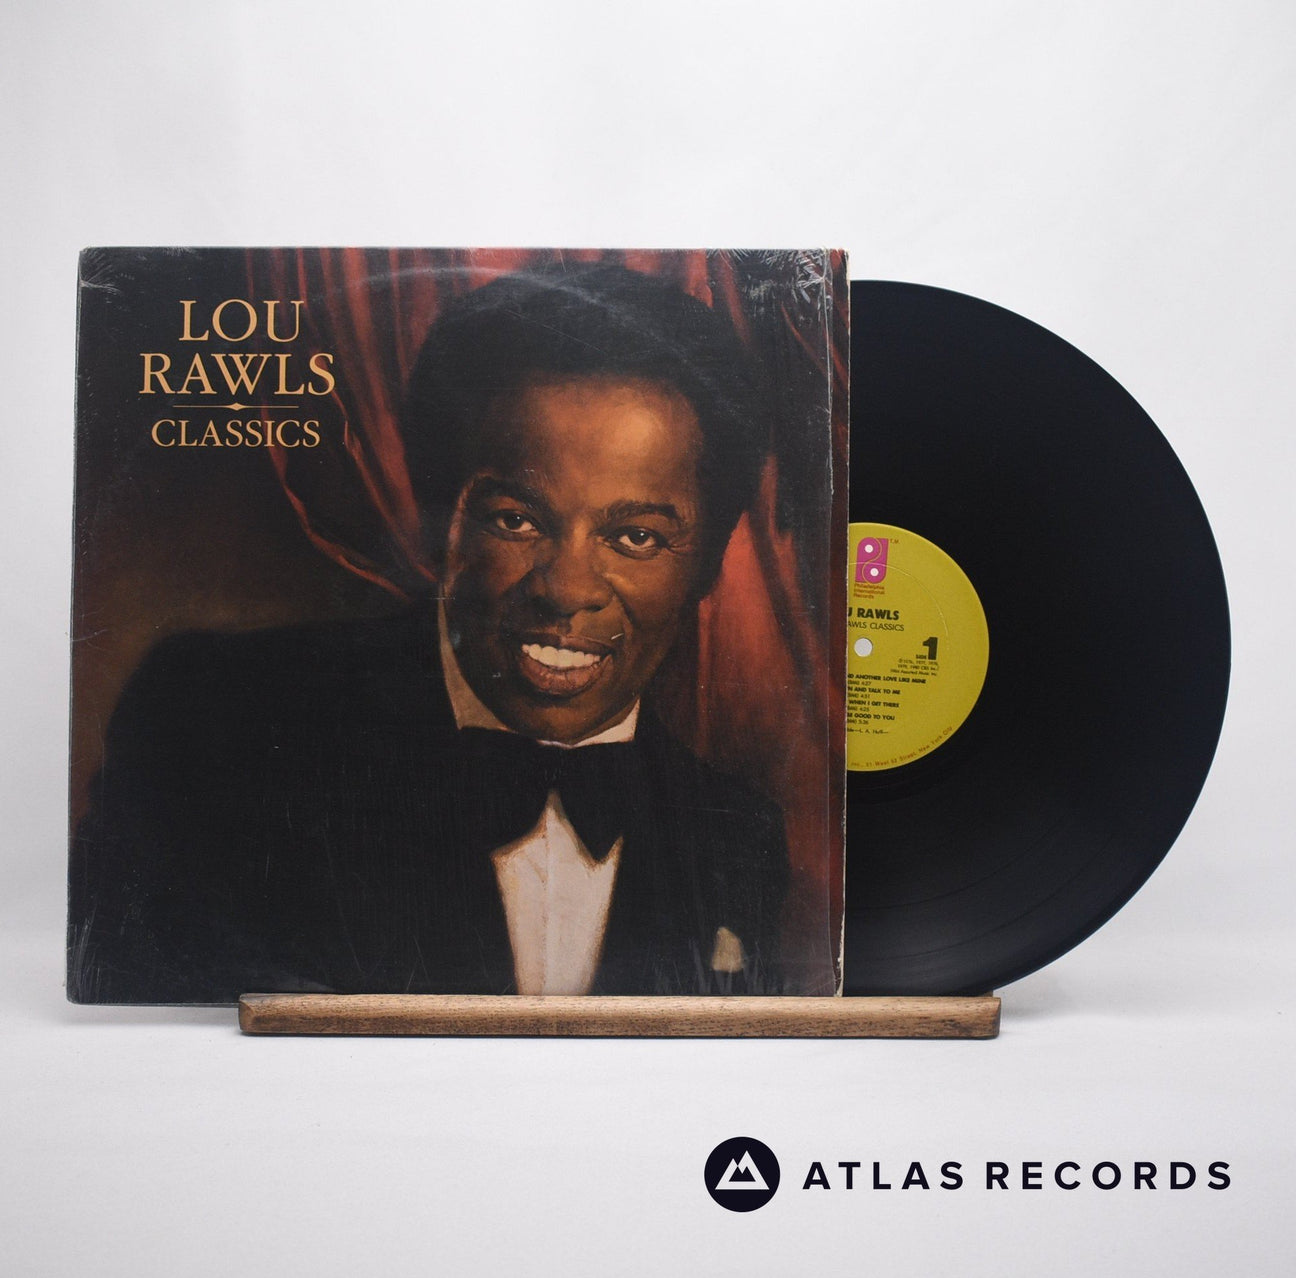 Lou Rawls Classics LP Vinyl Record - Front Cover & Record